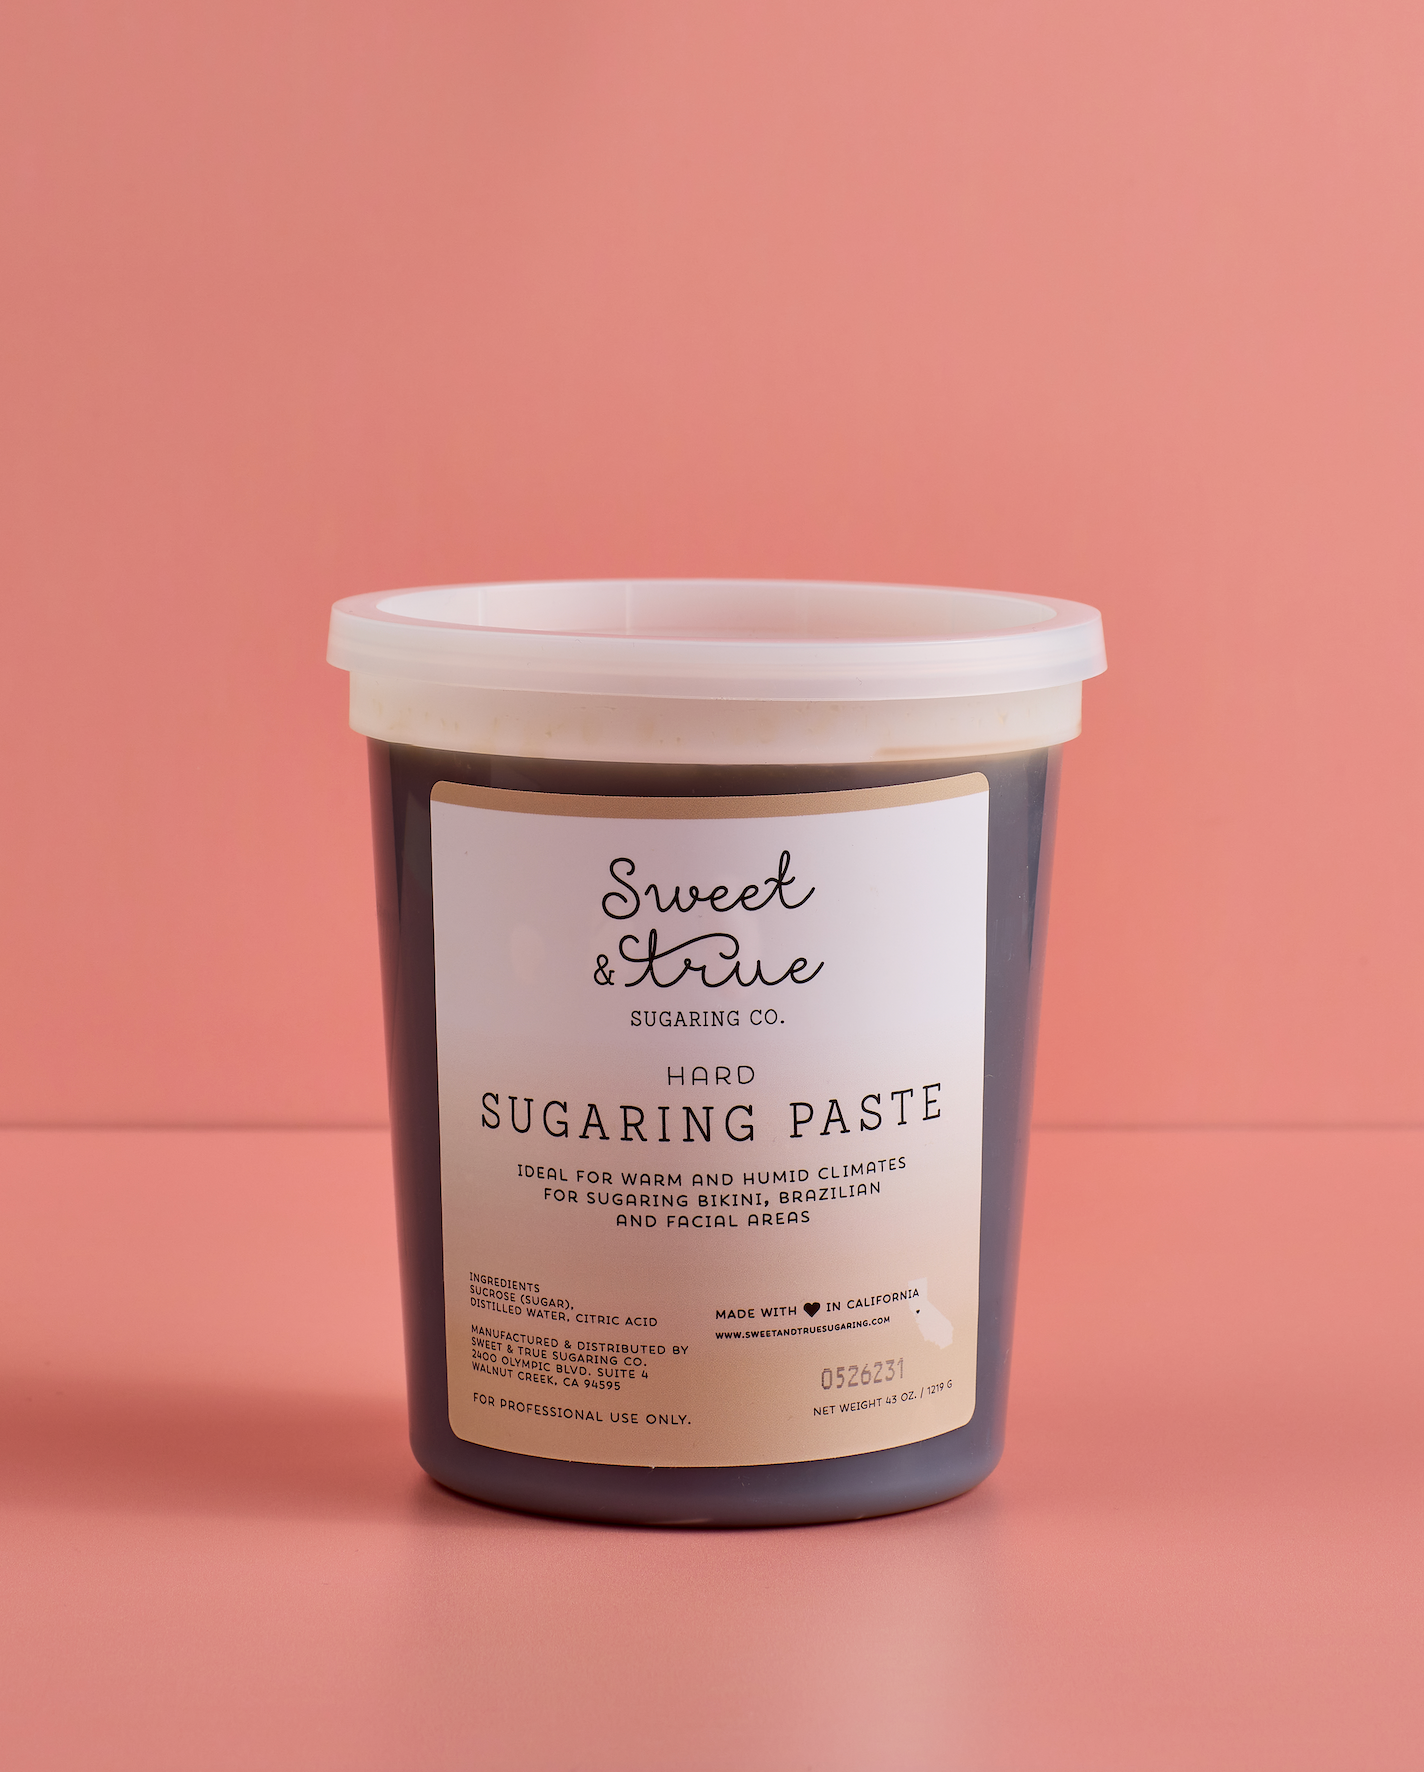 Hard - Sugaring Paste (43 oz.)